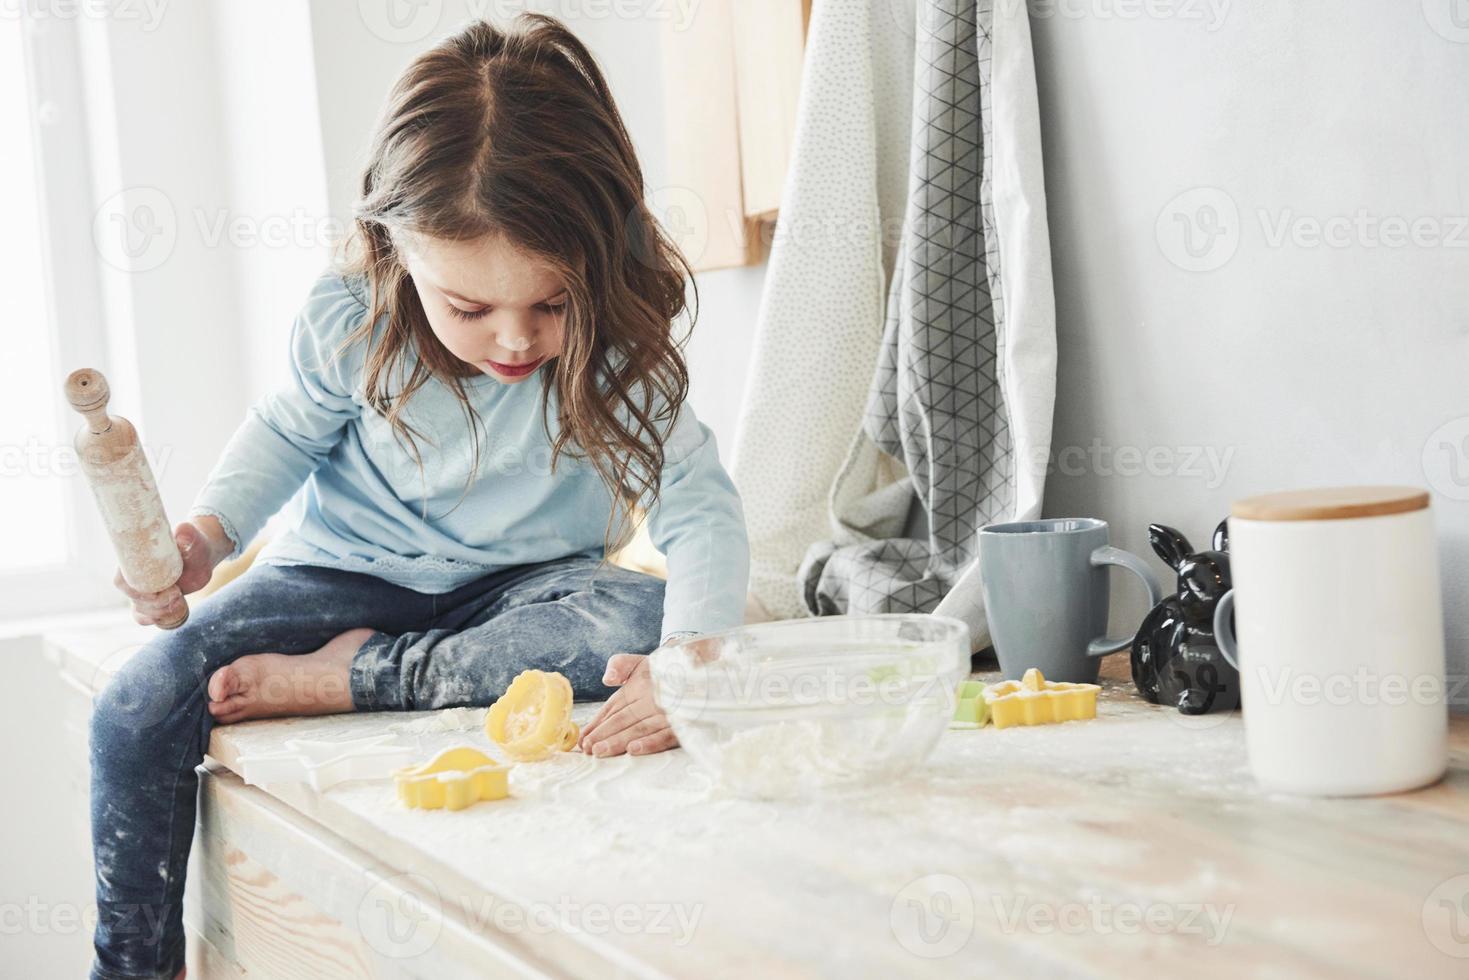 ensam i rummet när föräldrarna inte är hemma. foto av söt liten flicka som sitter på köksbordet och leker med mjöl